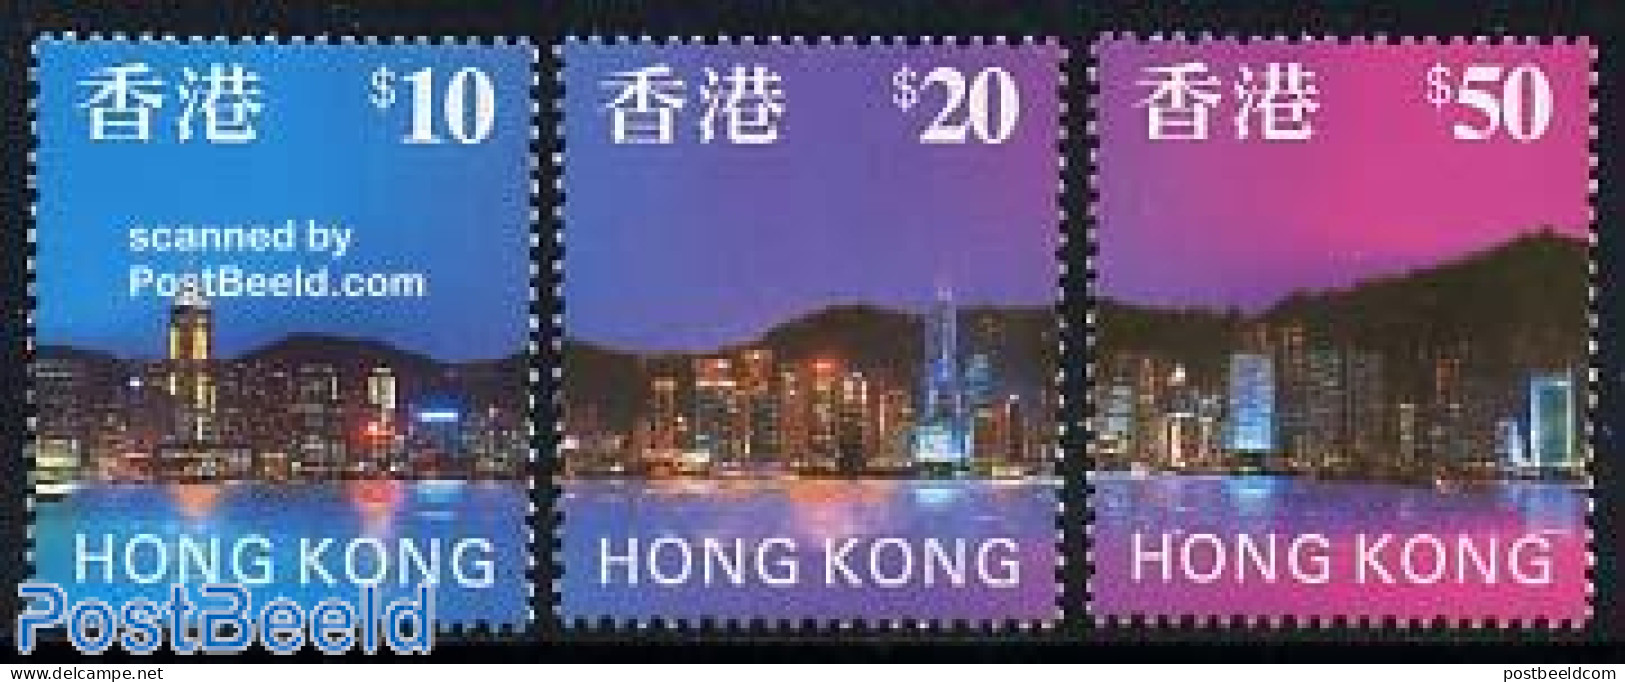 Hong Kong 1997 Definitives 3v, Mint NH - Ongebruikt